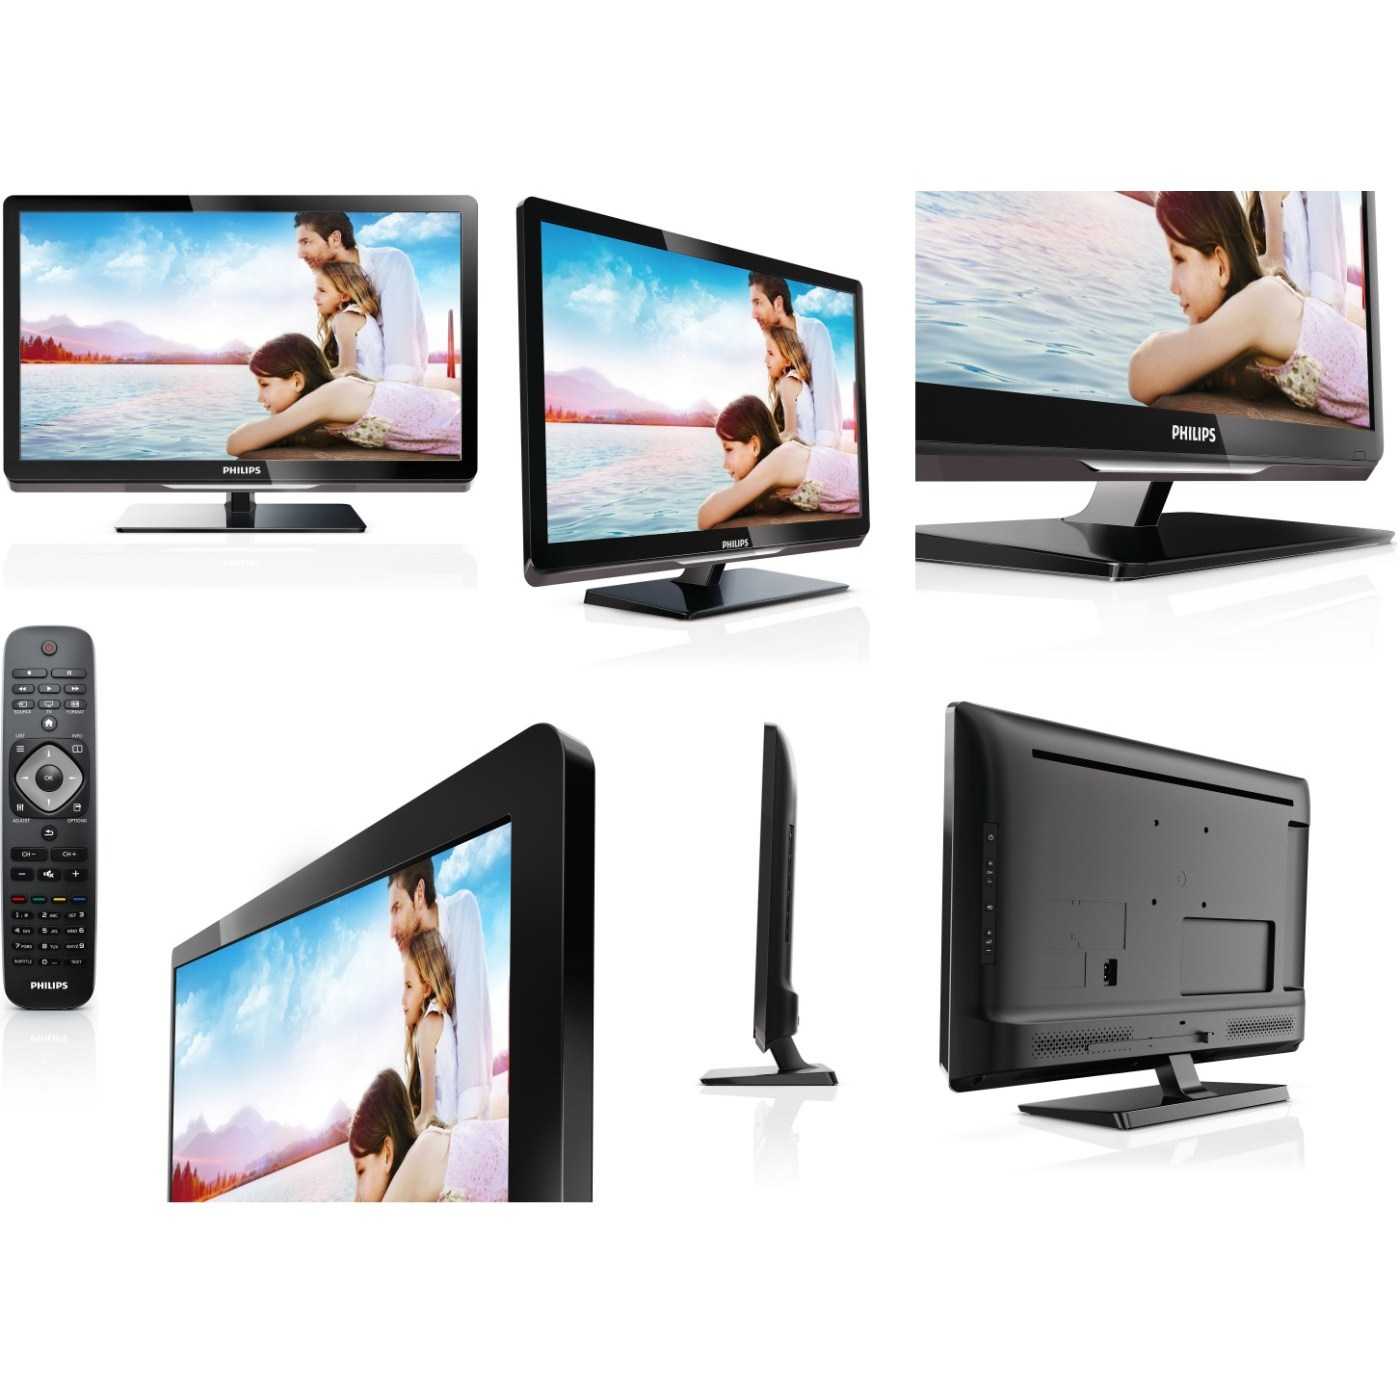 Телевизор Philips 22PFL3507H - подробные характеристики обзоры видео фото Цены в интернет-магазинах где можно купить телевизор Philips 22PFL3507H